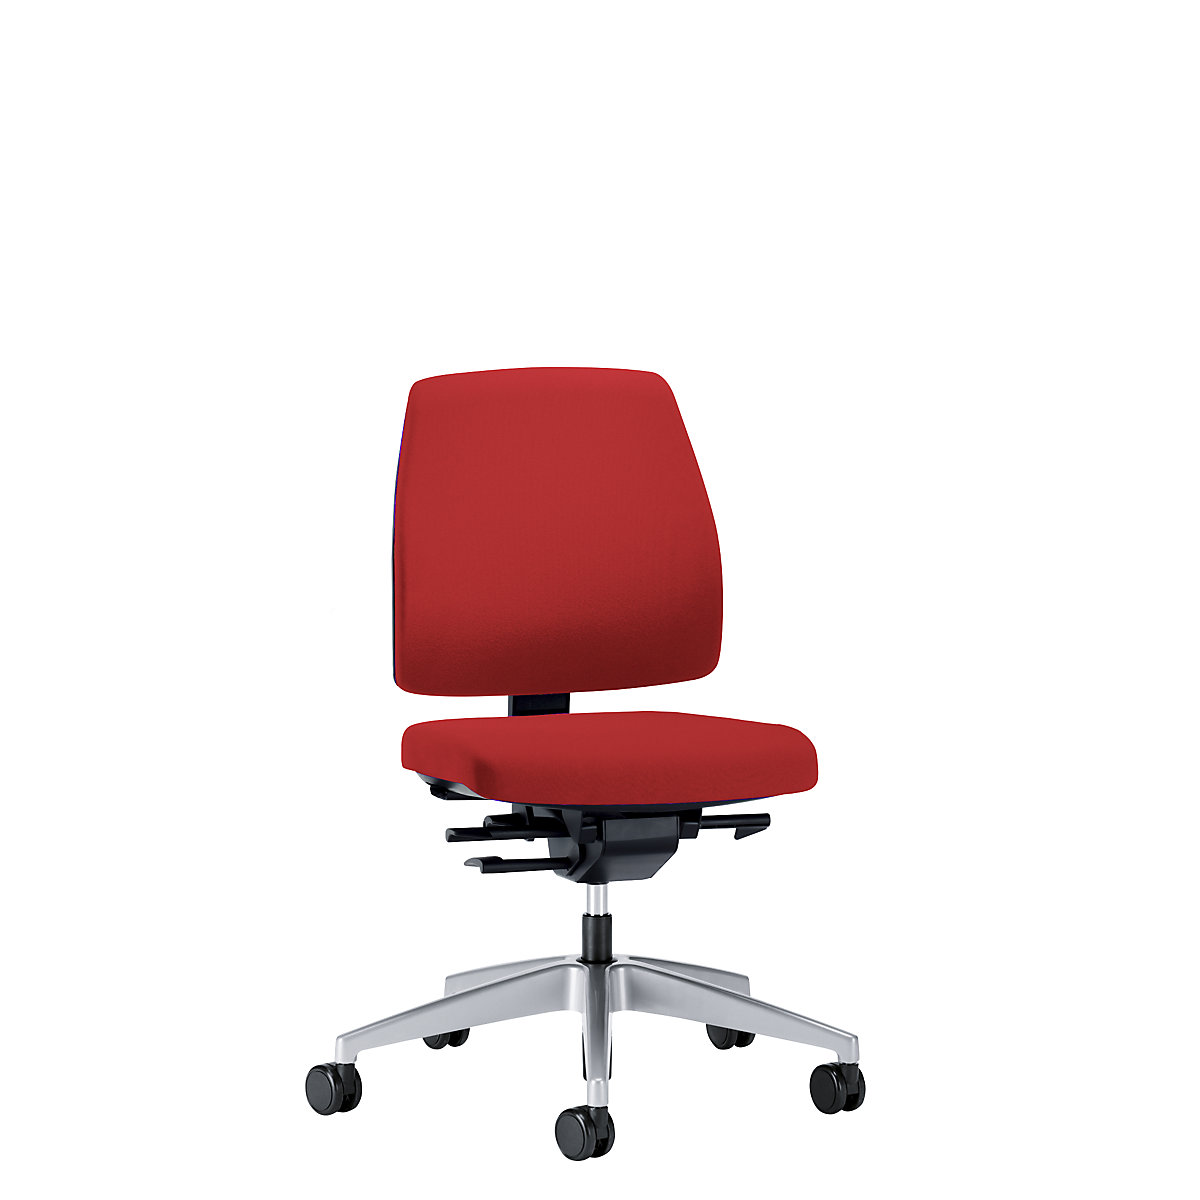 Cadeira giratória de escritório GOAL, altura do encosto 430 mm – interstuhl, armação prateada brilhante, com rodas duras, vermelho fogo, profundidade do assento 410 mm-3